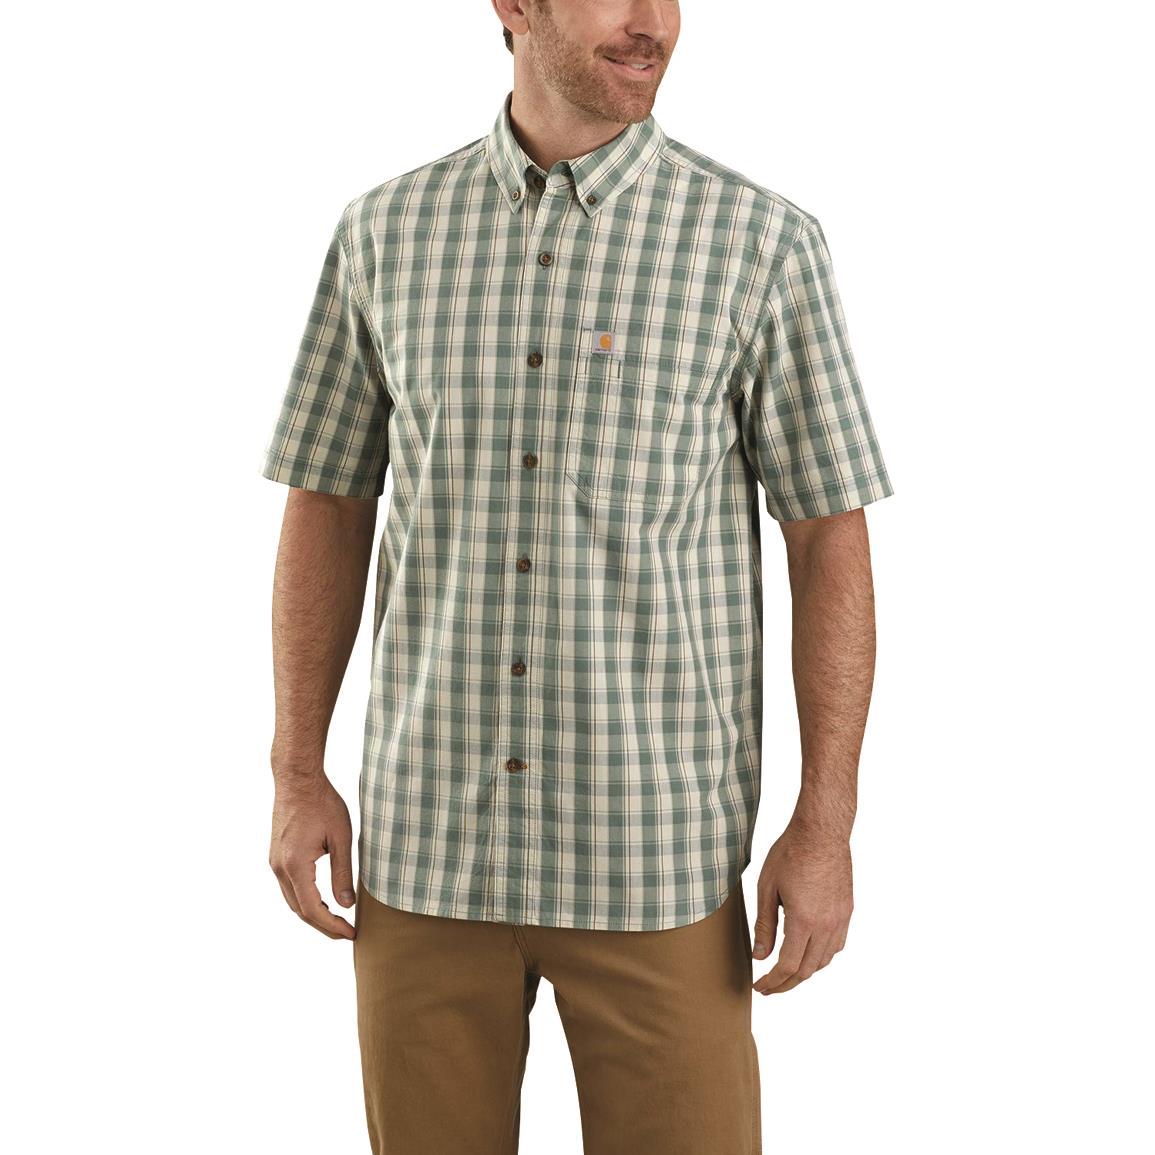 Carhartt Men's Plaid Relaxed Fit Short Sleeve Shirt - 713942, Shirts